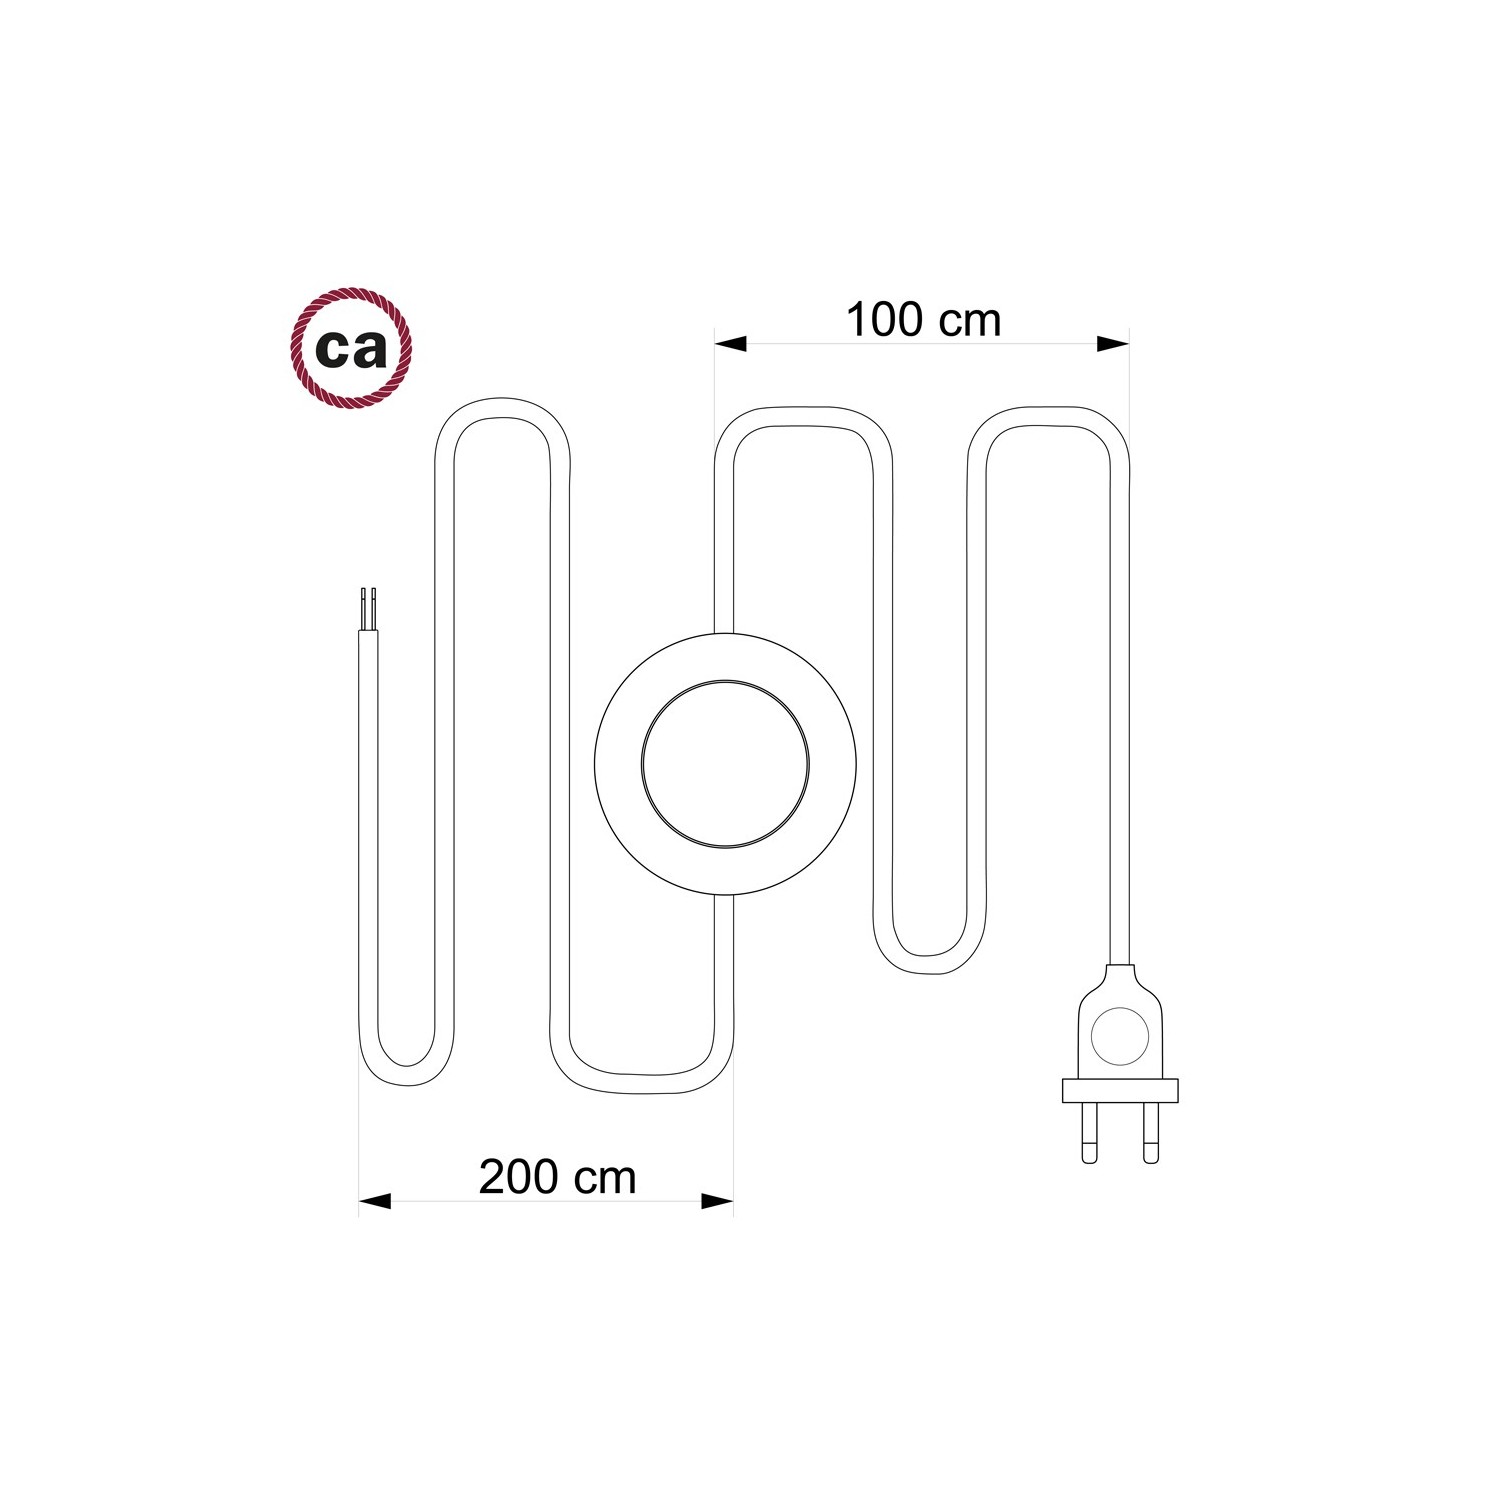 Cordon pour lampadaire, câble TM10 Effet Soie Jaune 3 m. Choisissez la couleur de la fiche et de l'interrupteur!